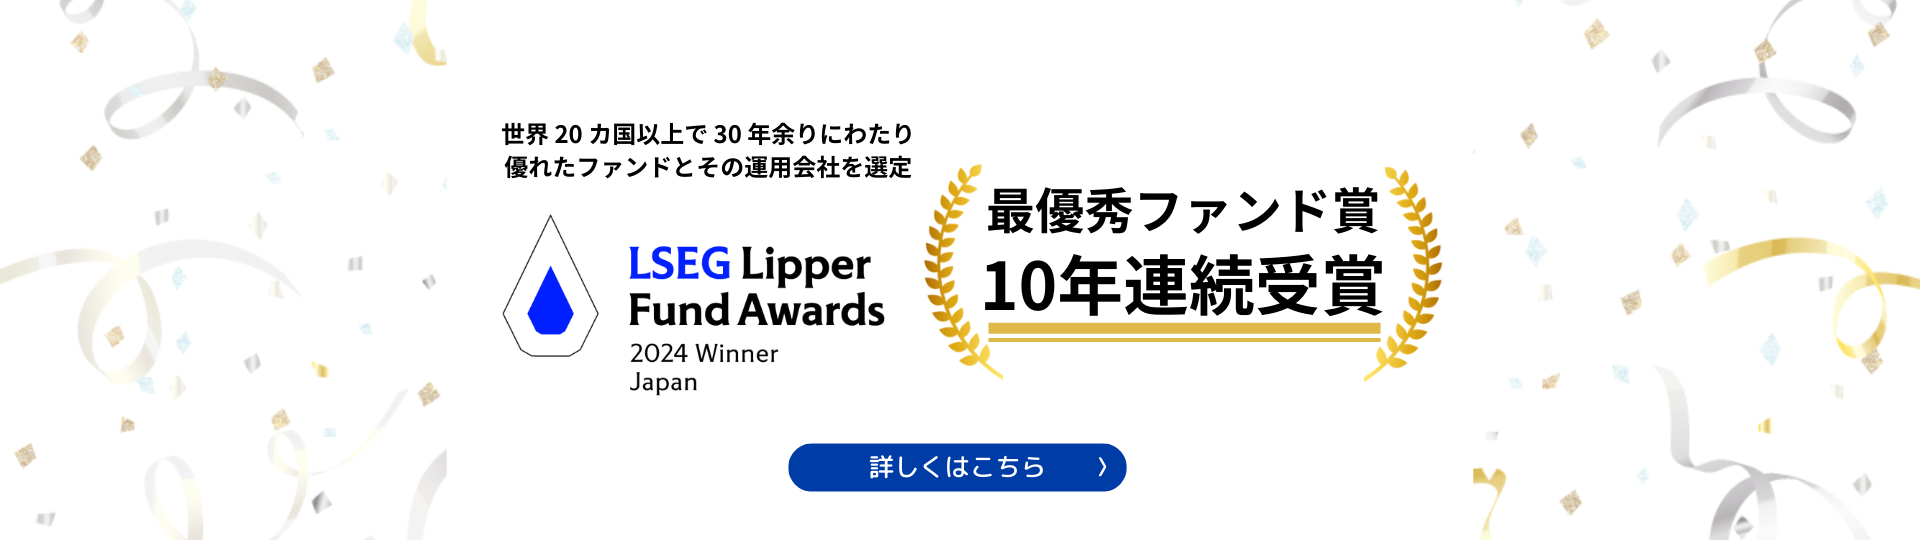 LSEG リッパー・ファンド・アワード・ジャパン 2024